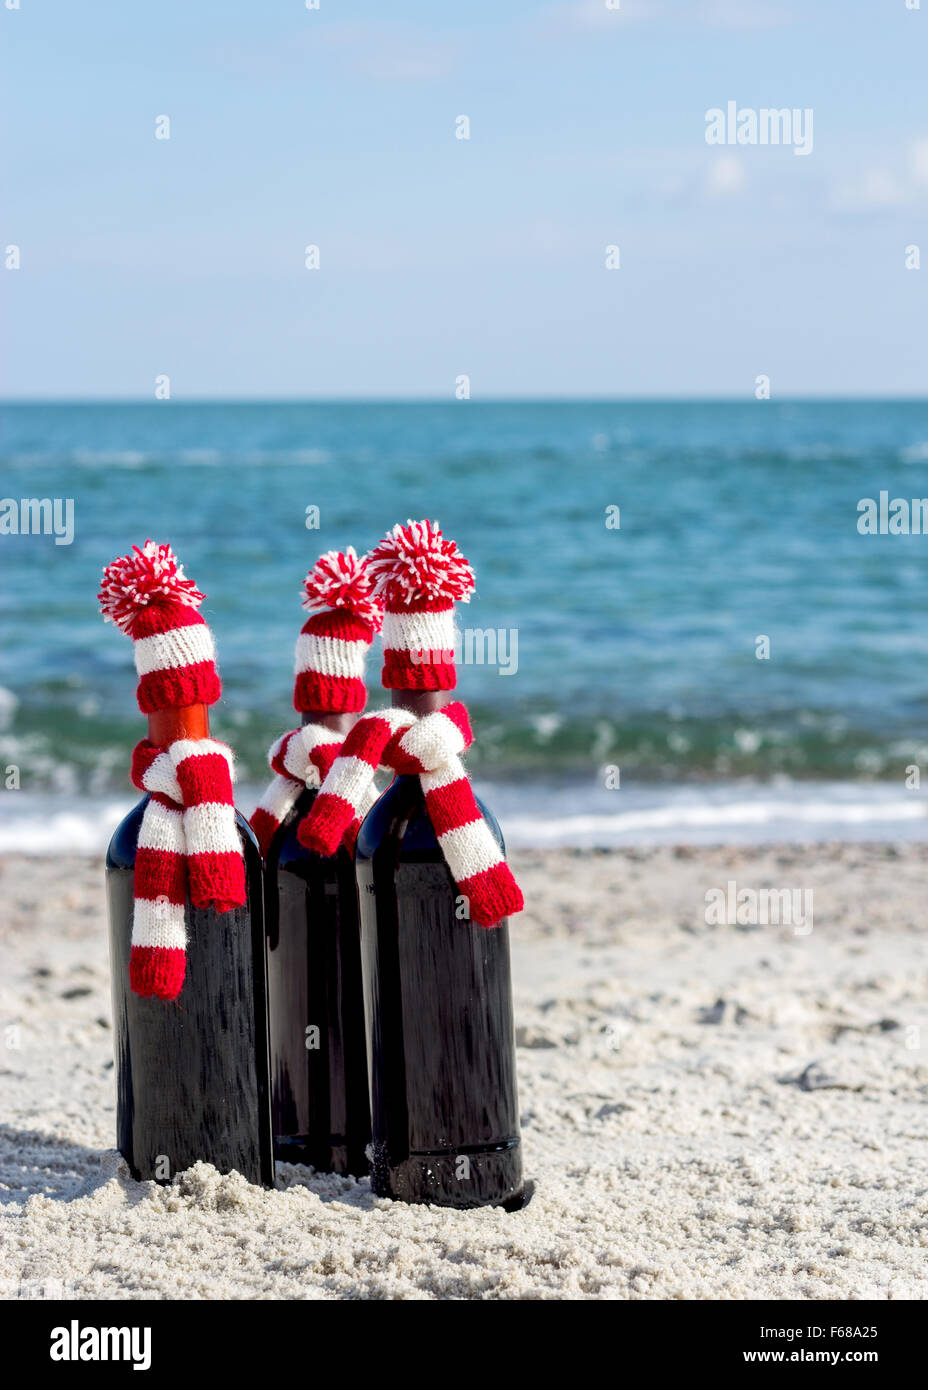 Weihnachtsgeschenke. Drei Flaschen Wein in gestrickte Mützen und Schals am Strand. Selektiven Fokus. Stockfoto